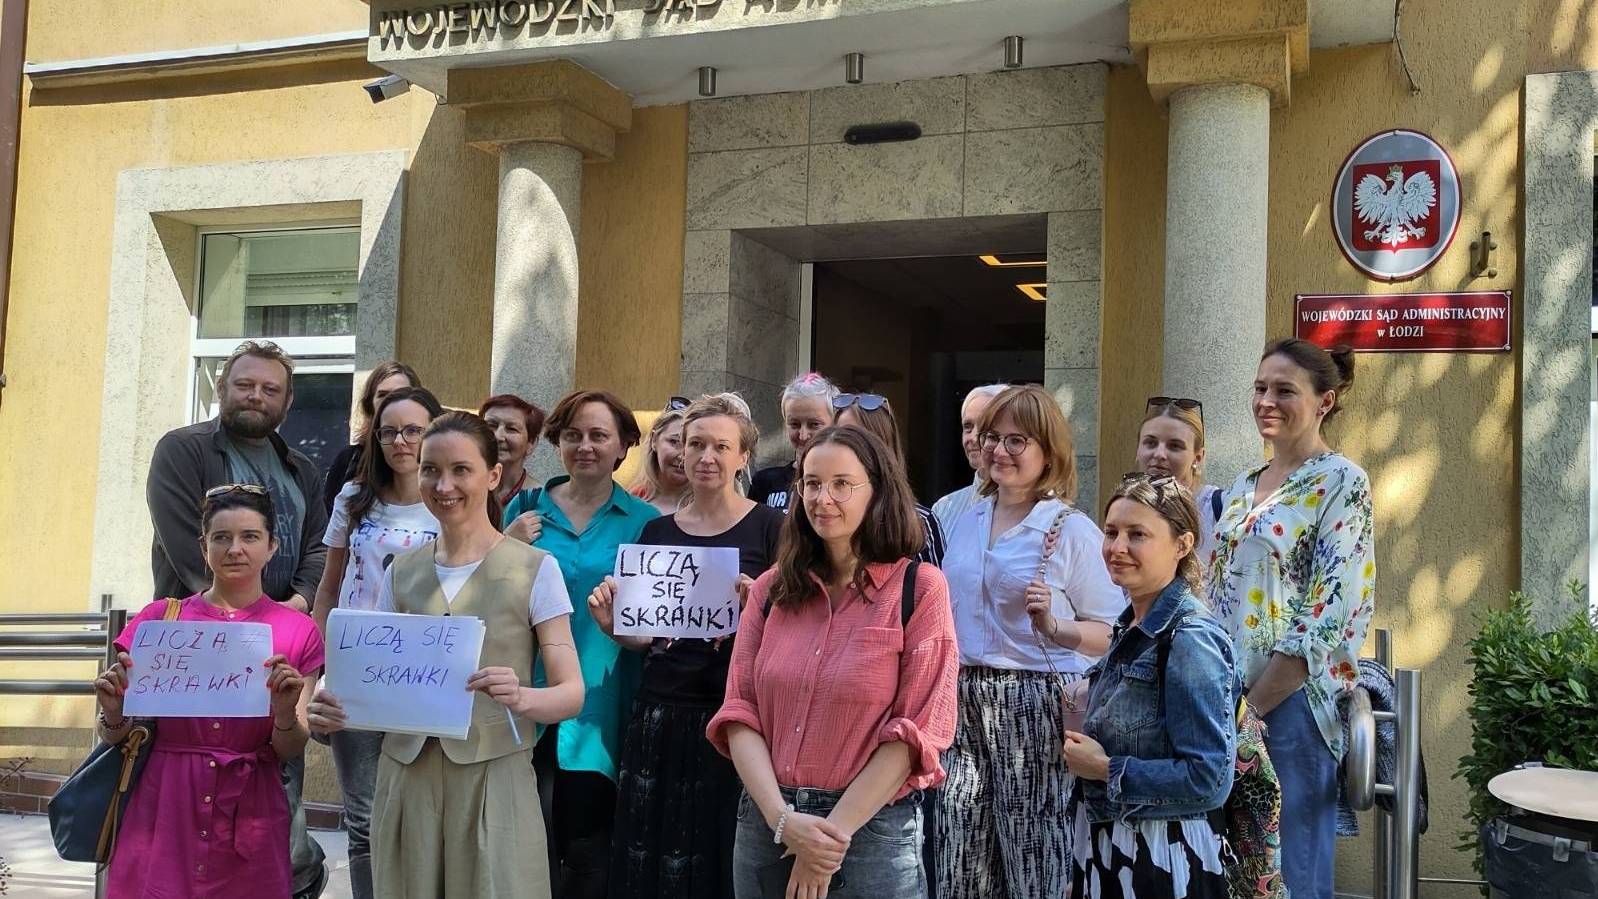 Karolina Kuszlewicz i osoby, które przyszły do sądu z kartkami, na których napisano: liczą się skrawki